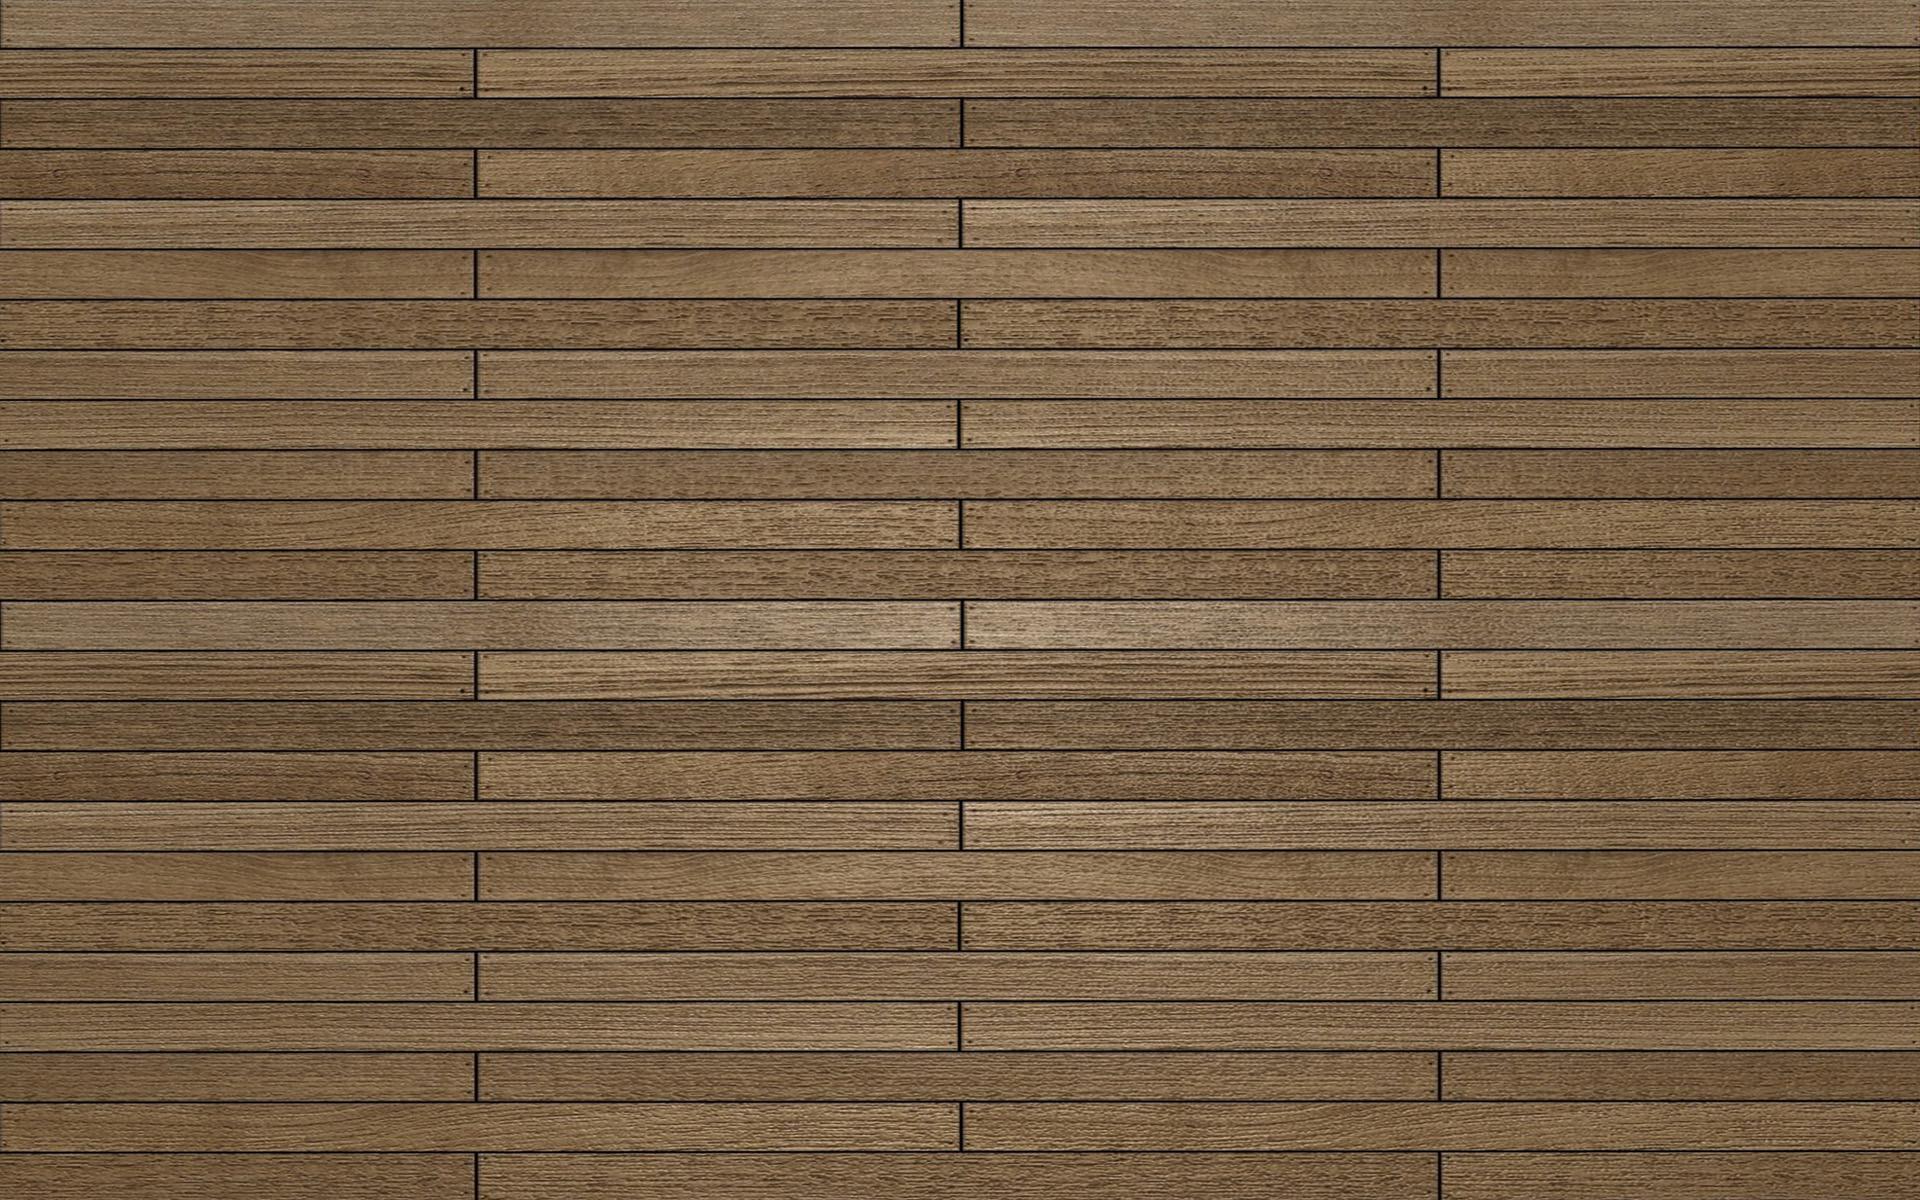 Wood floor background wallpaper